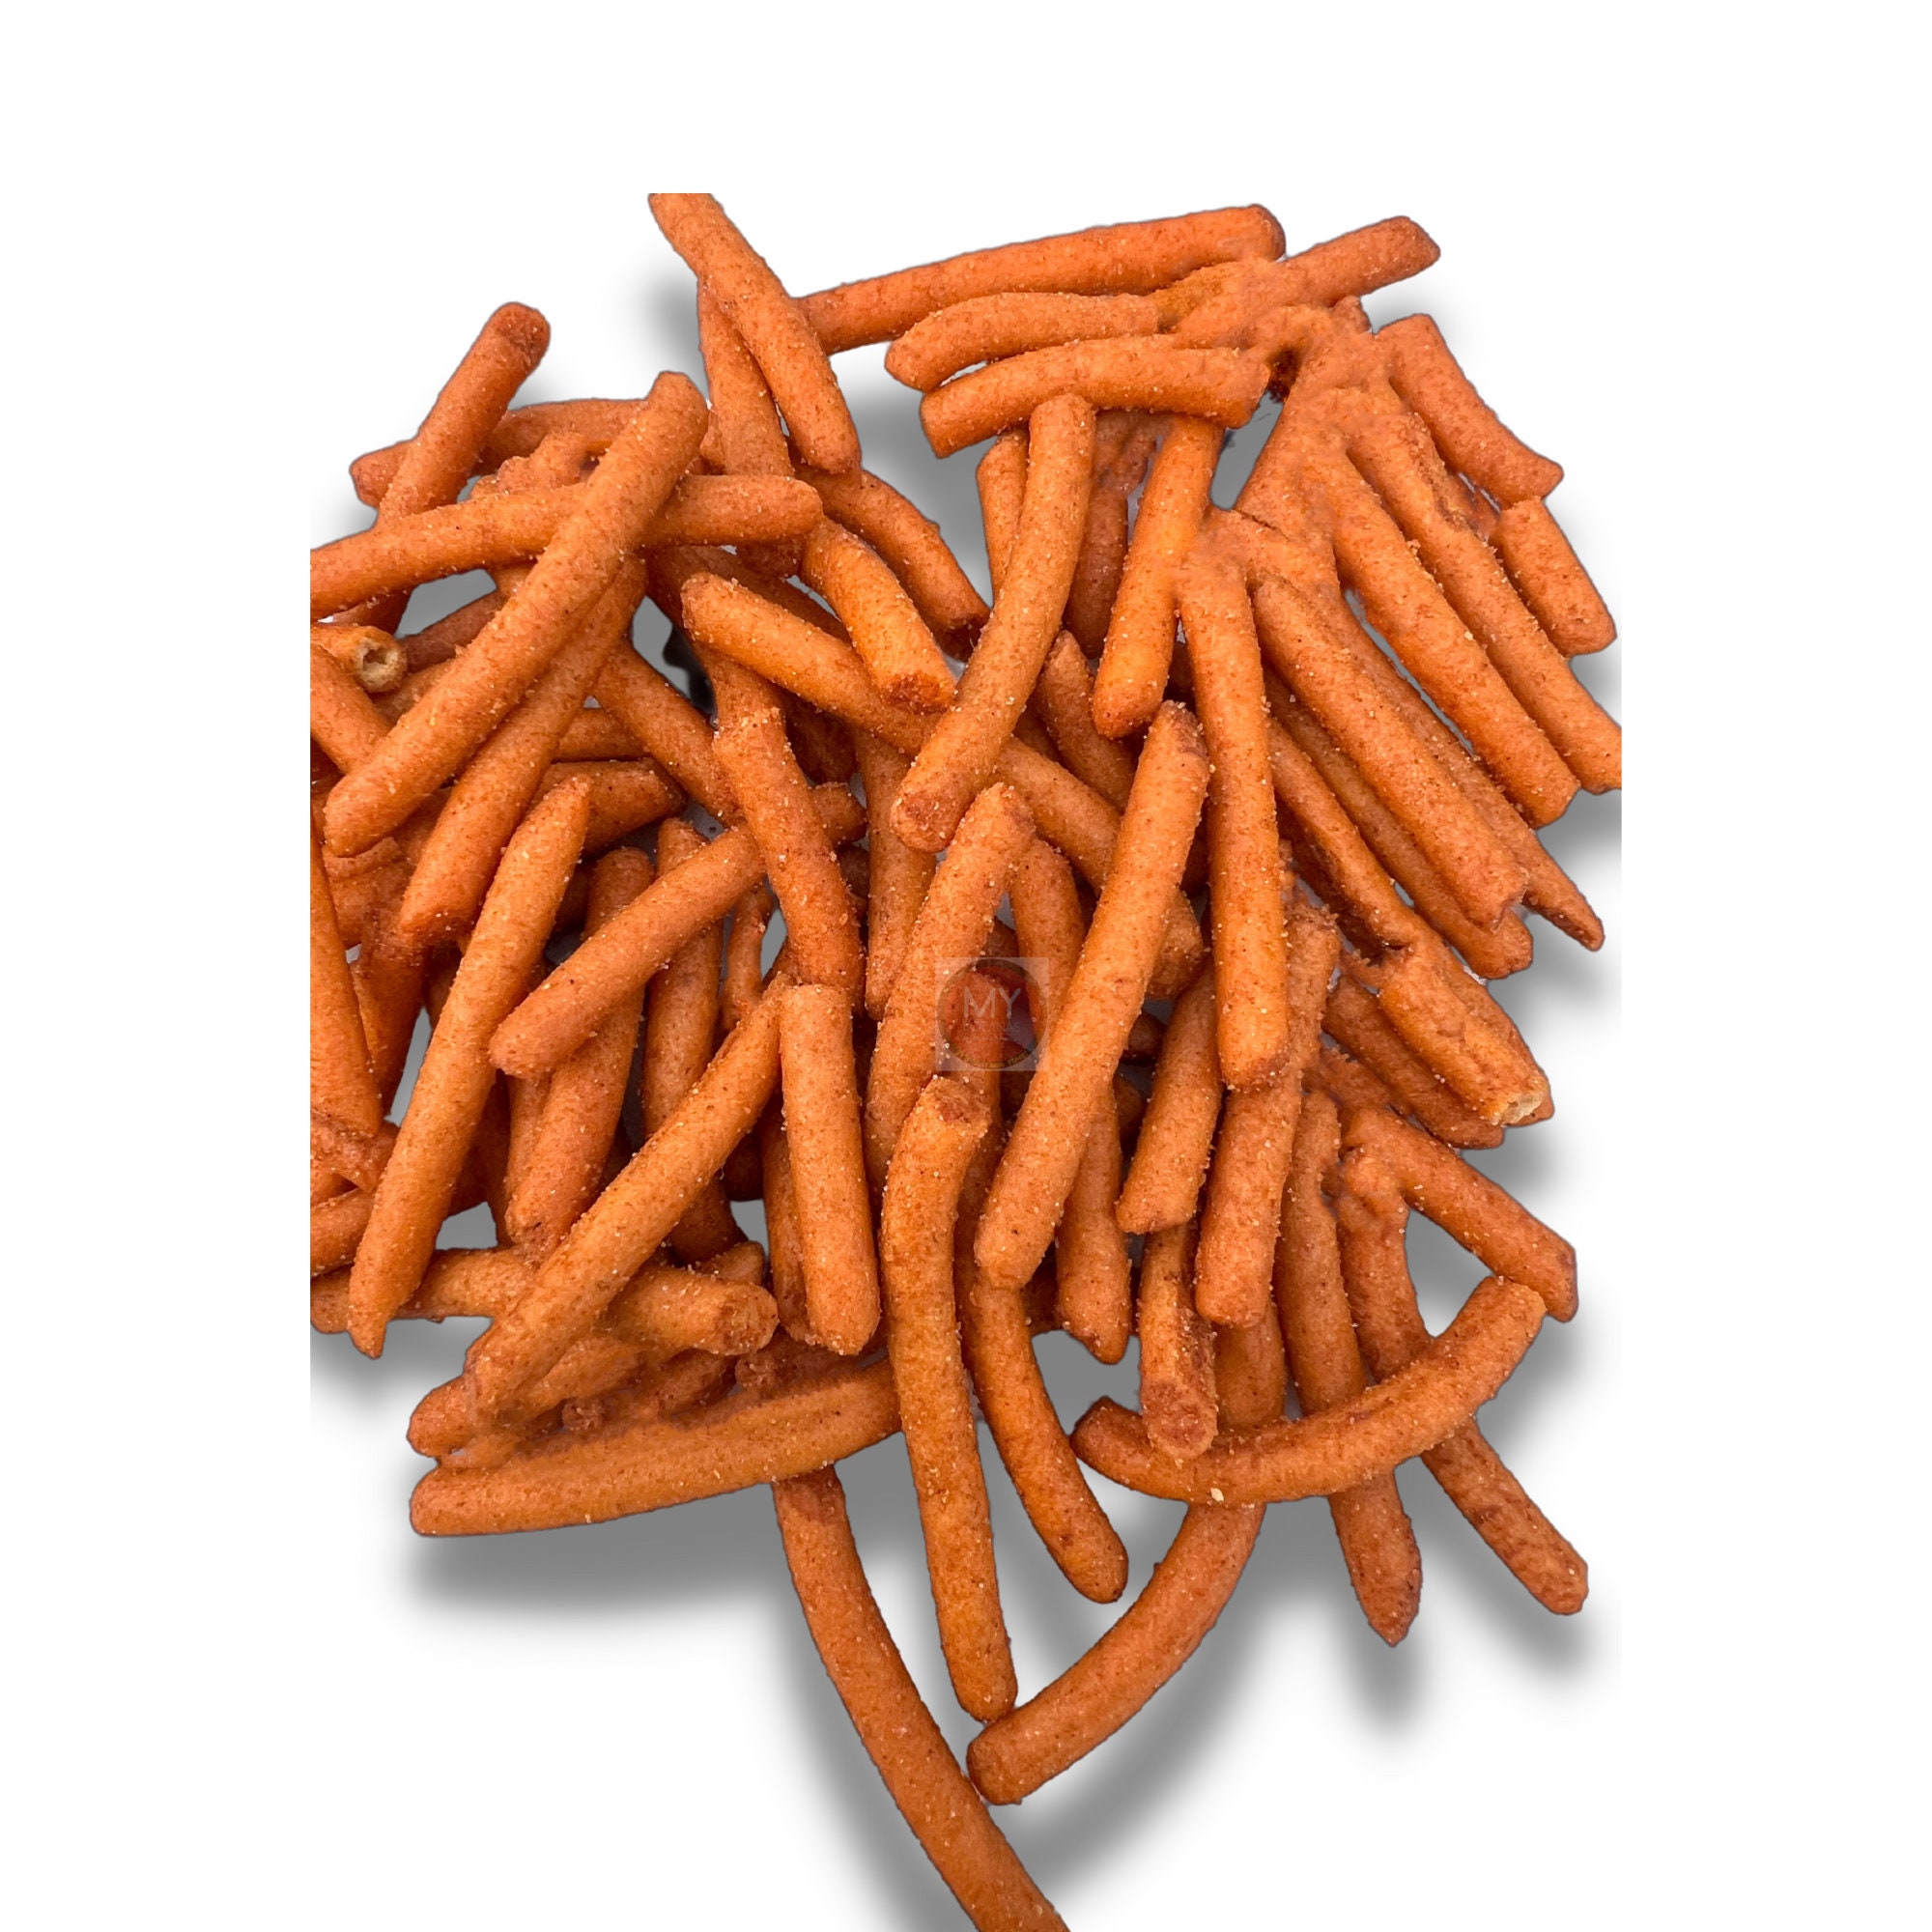 Cheetos Colmillos -  Norway